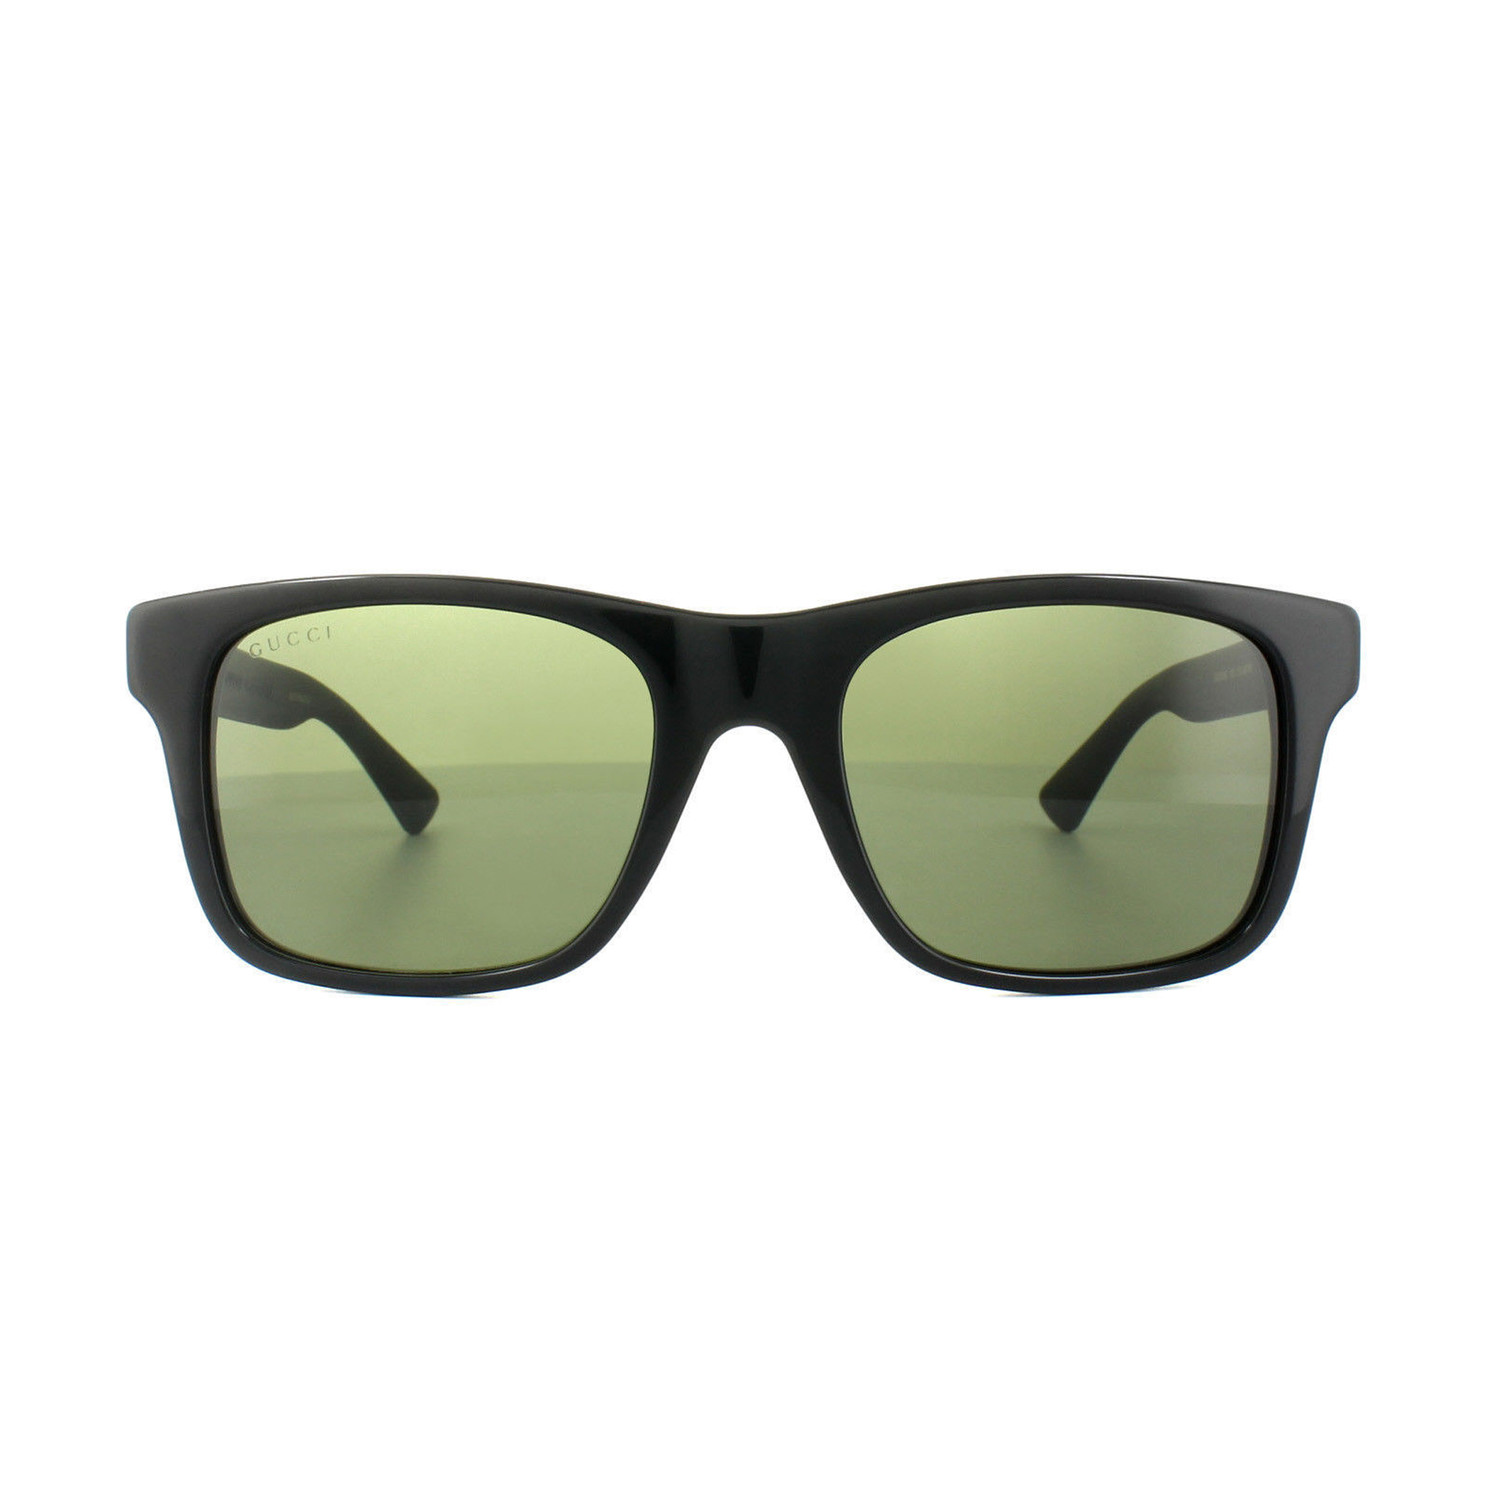 Gucci // GG0008S-001-53 Sunglasses // Black + Gray - Signature Designer ...